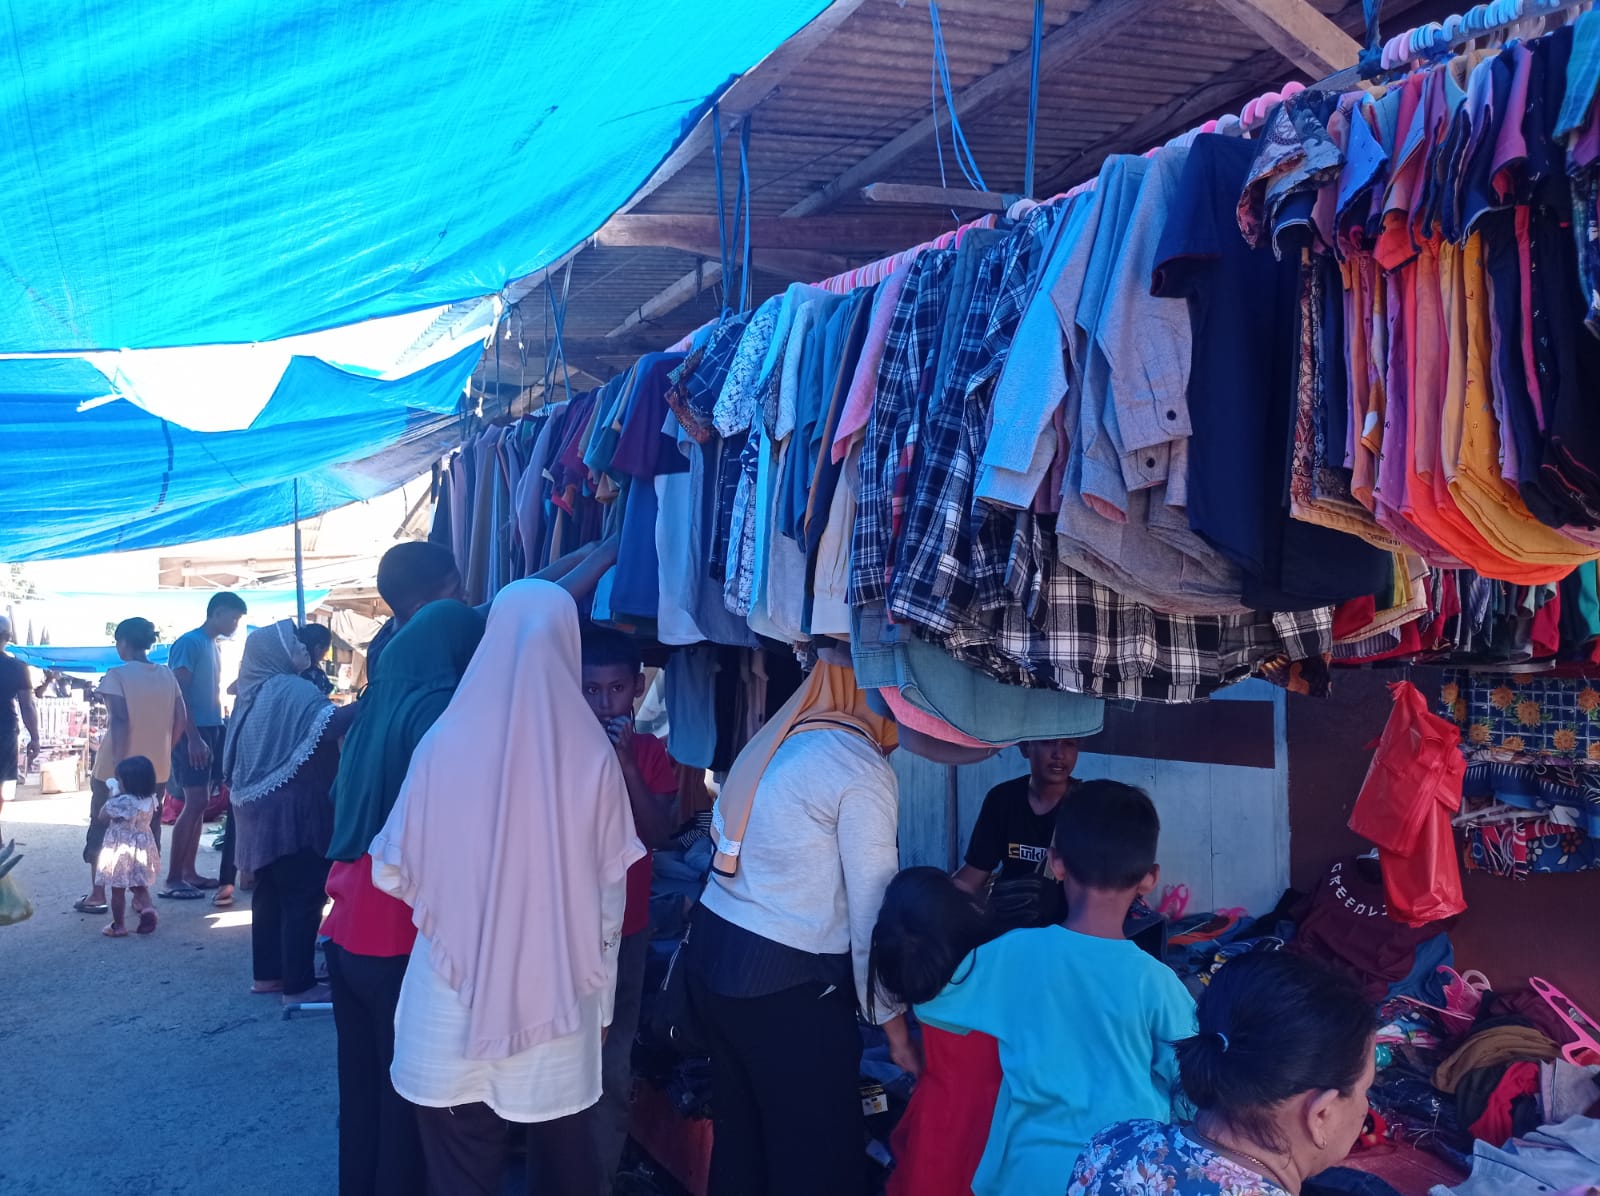 Jelang Hari Raya Idul Fitri, Sejumlah Pasar Tradisional di Mesuji Alami Peningkatan Pembeli